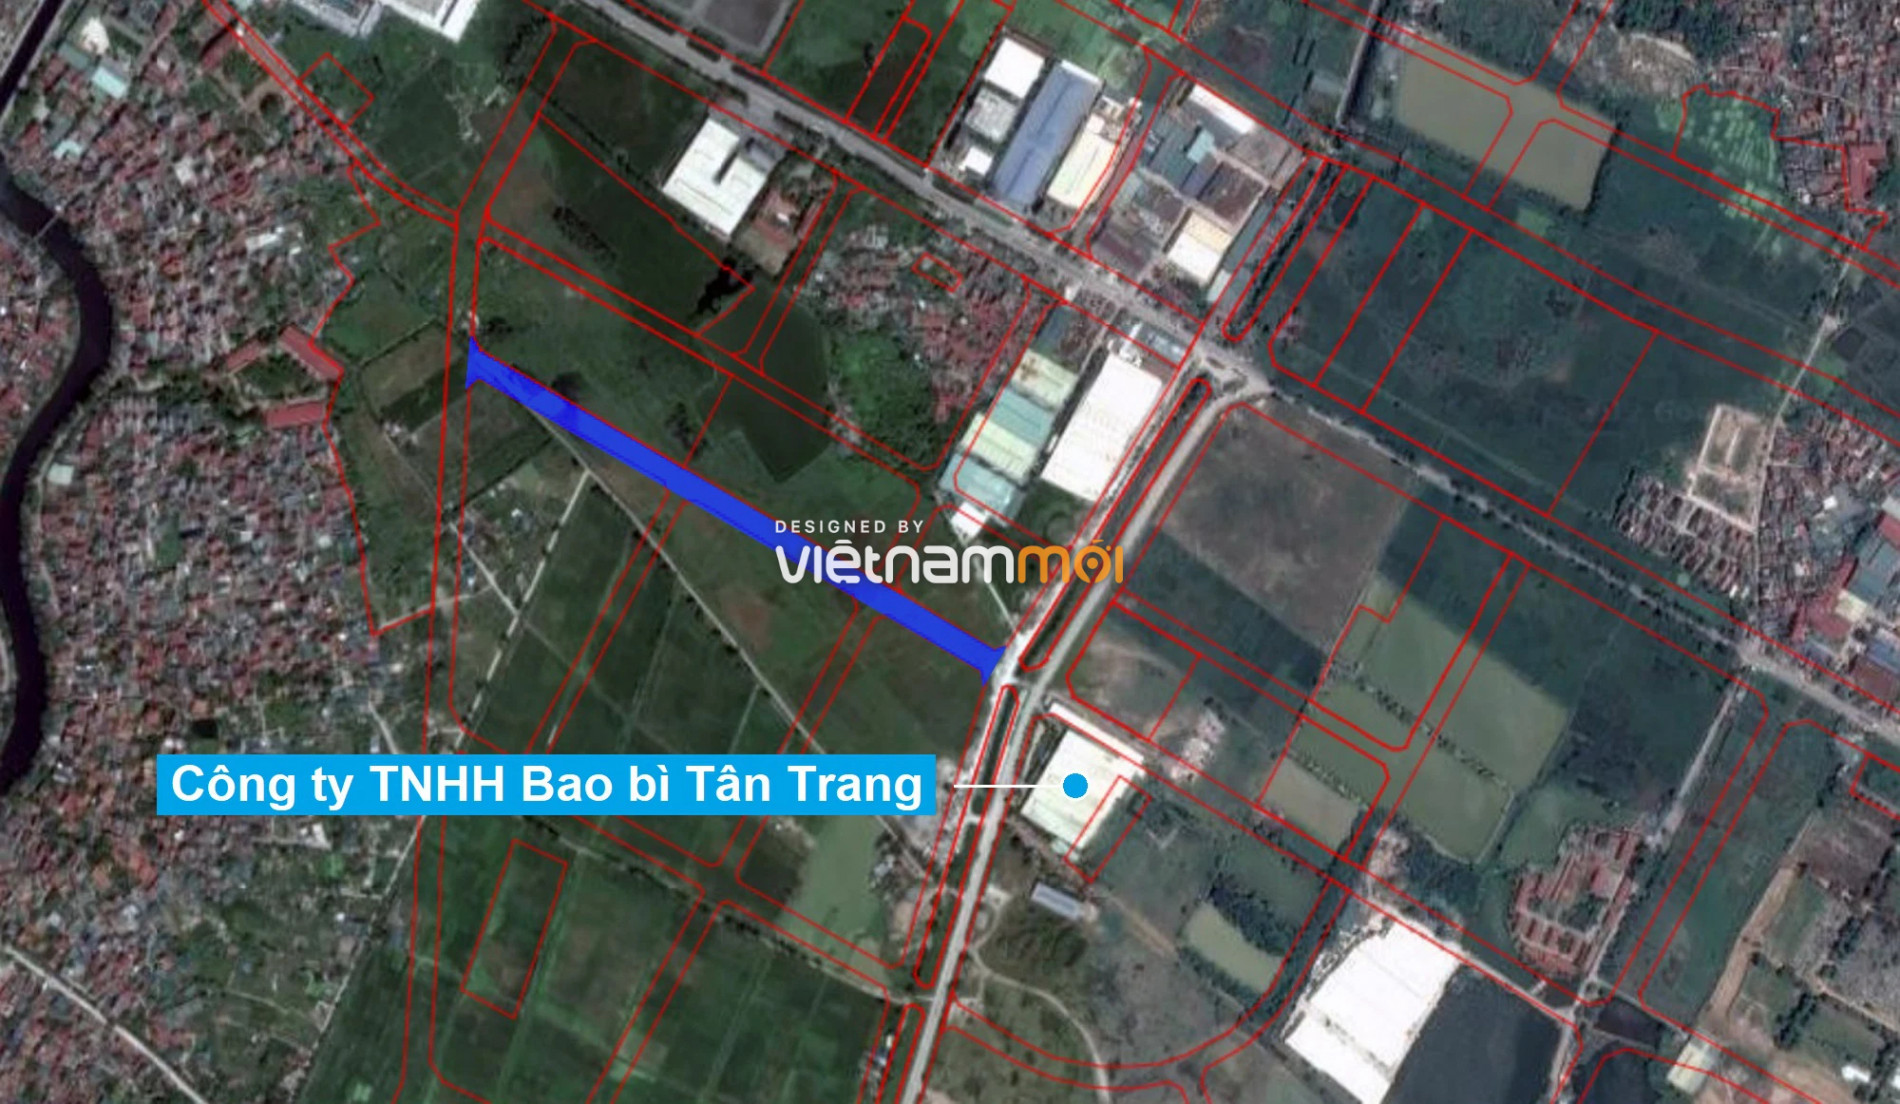 Những khu đất sắp thu hồi để mở đường ở xã Tả Thanh Oai, Thanh Trì, Hà Nội (phần 2) - Ảnh 17.